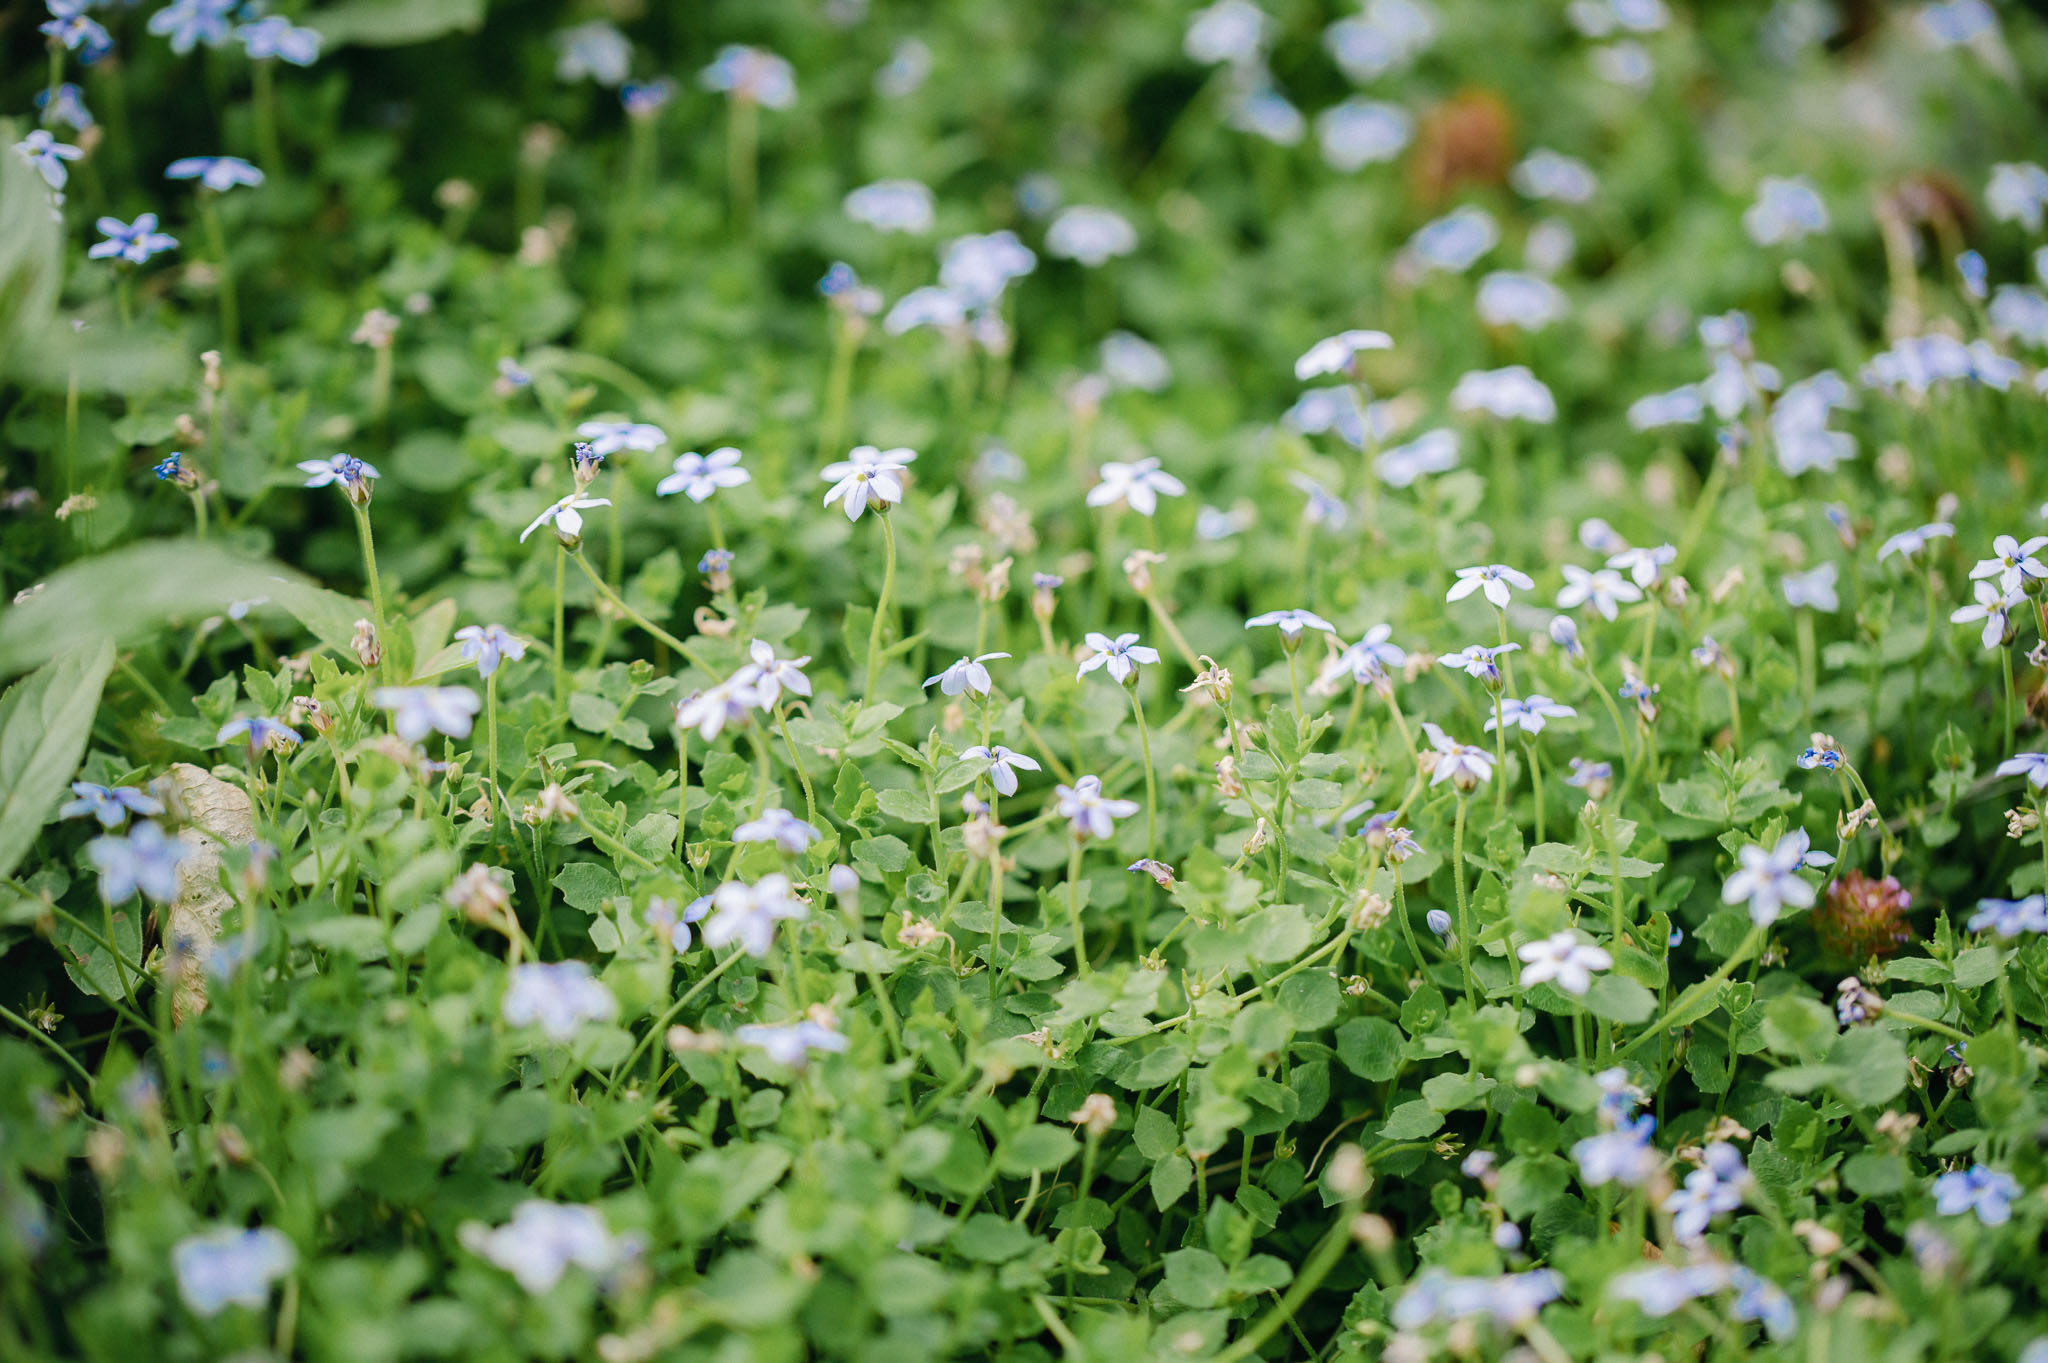 'Blue Foot' ist ein trittfester Bodendecker, der von Mai bis Oktober blüht